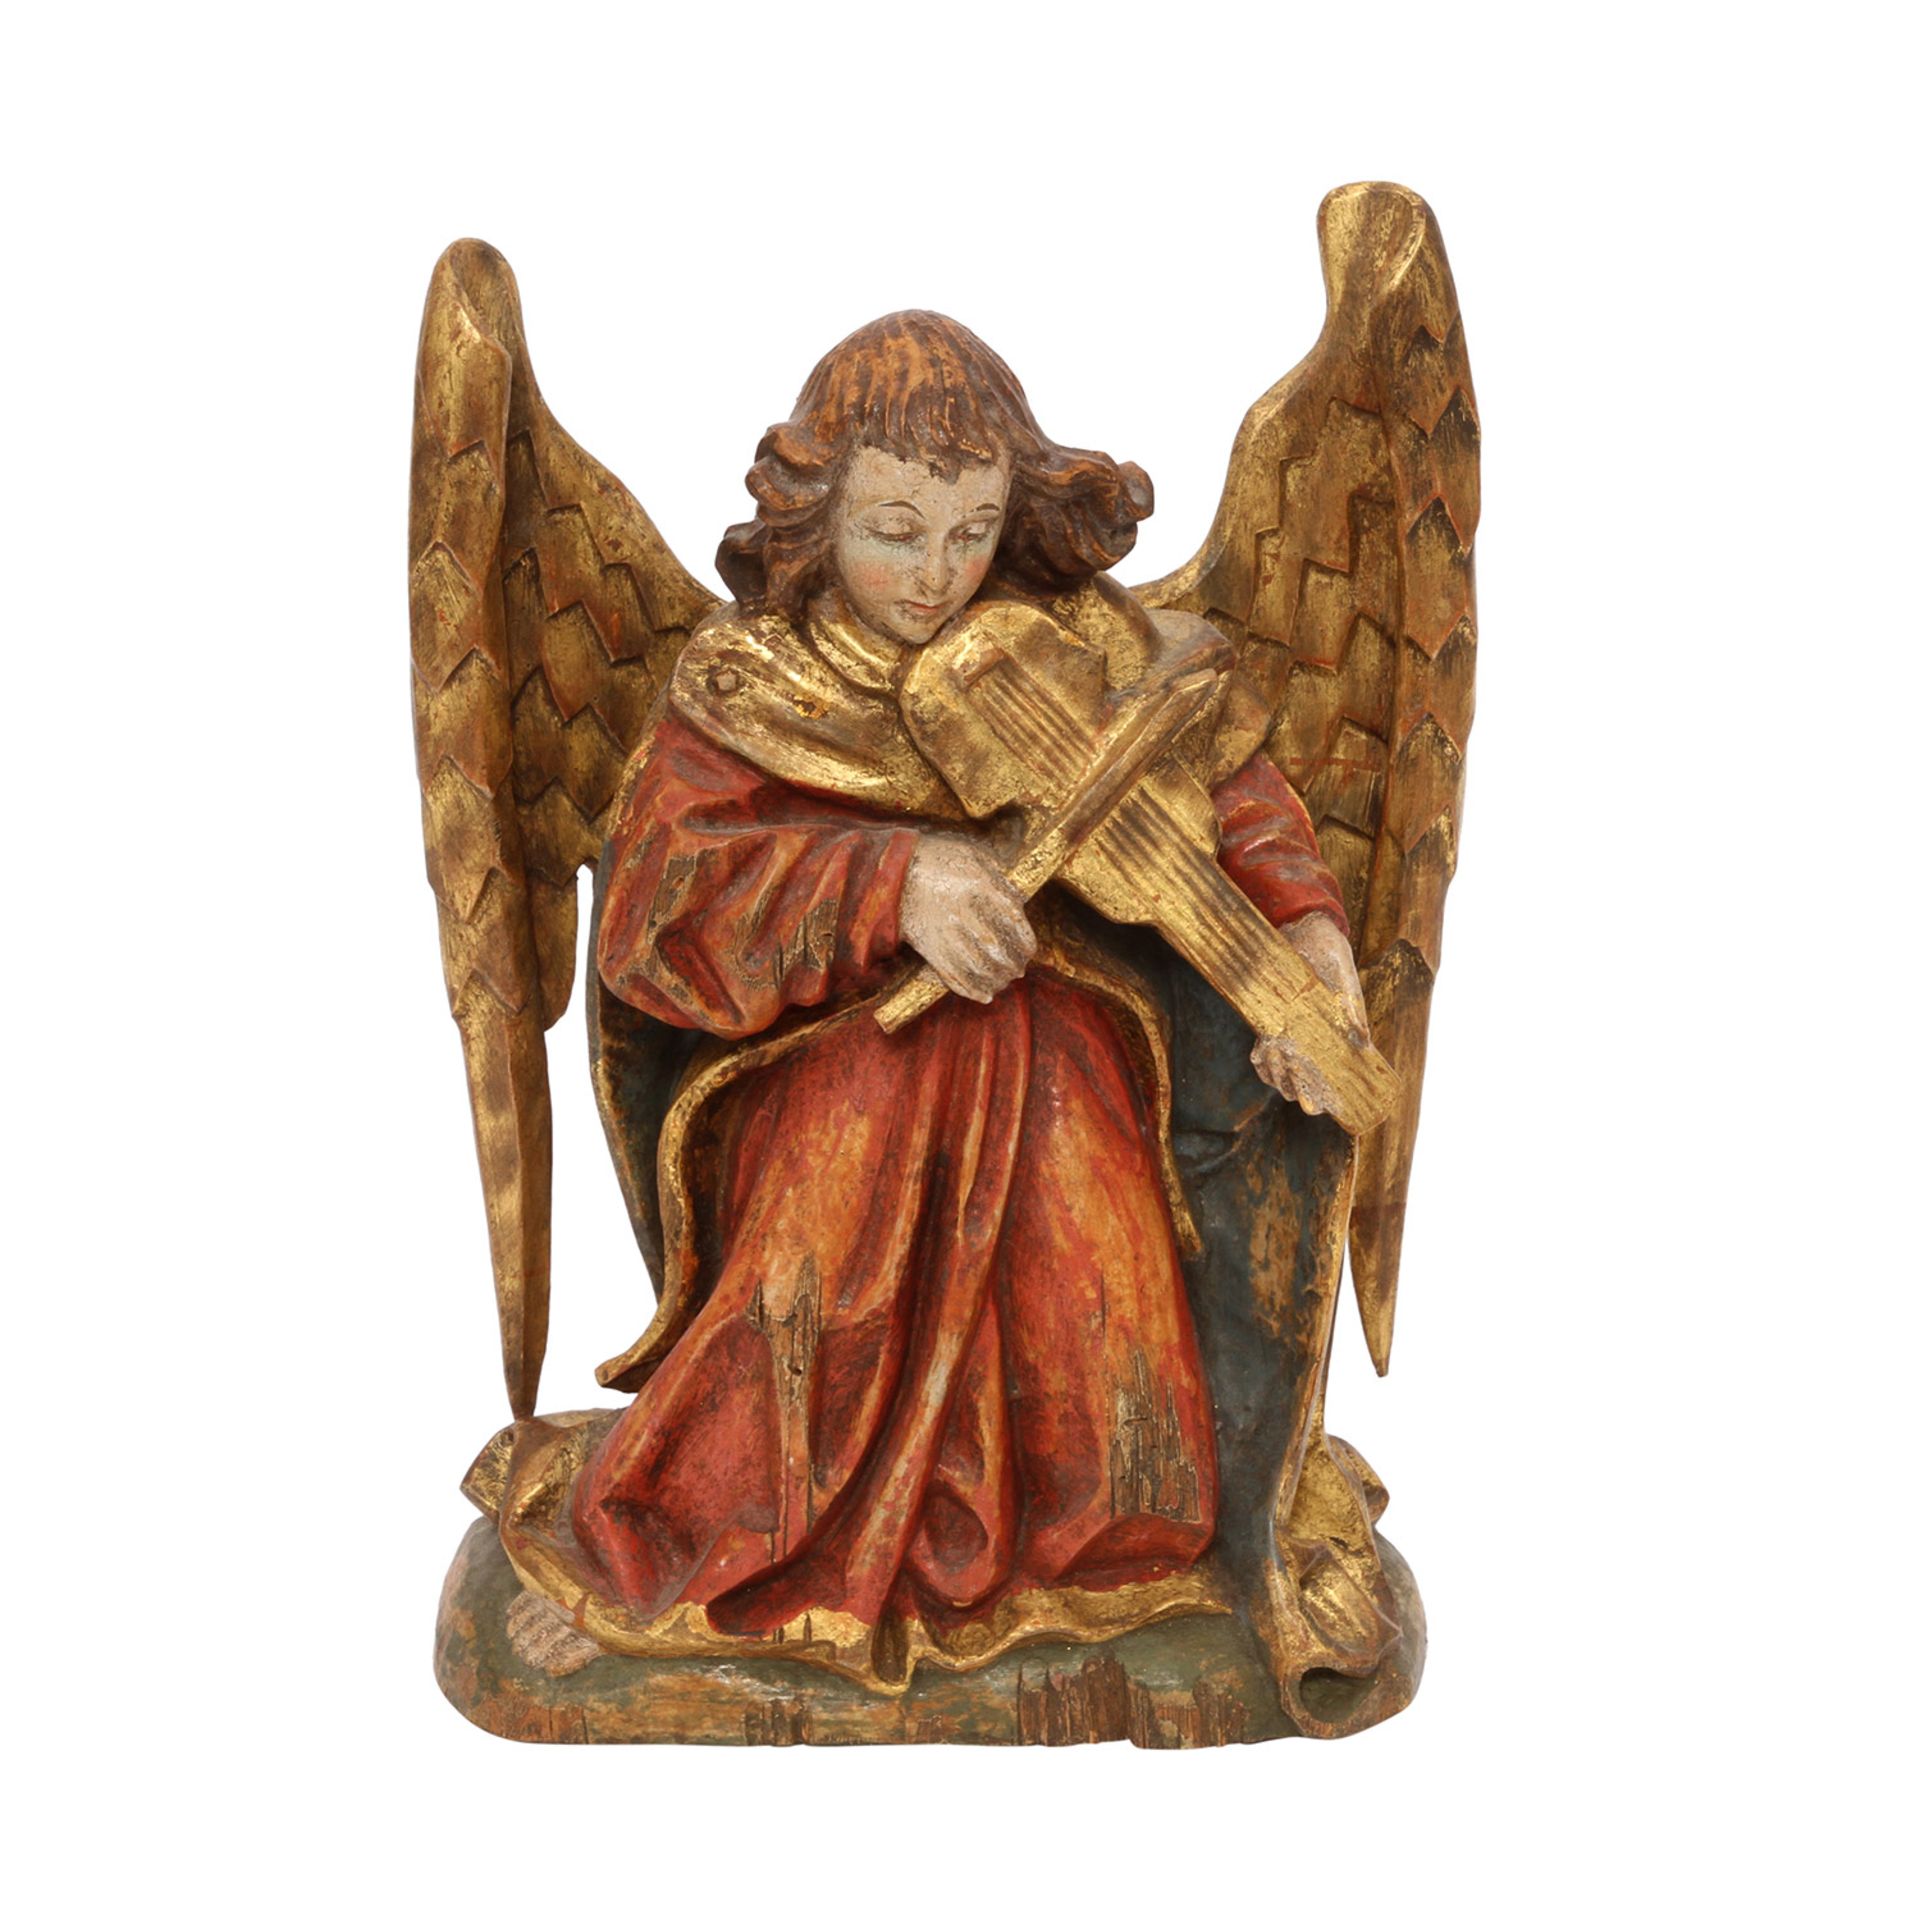 MUSIZIERENDER ENGEL20. Jh., Holz, musizierender Engel im gotischen Stil, H: 33 cm. Normale - Image 5 of 6